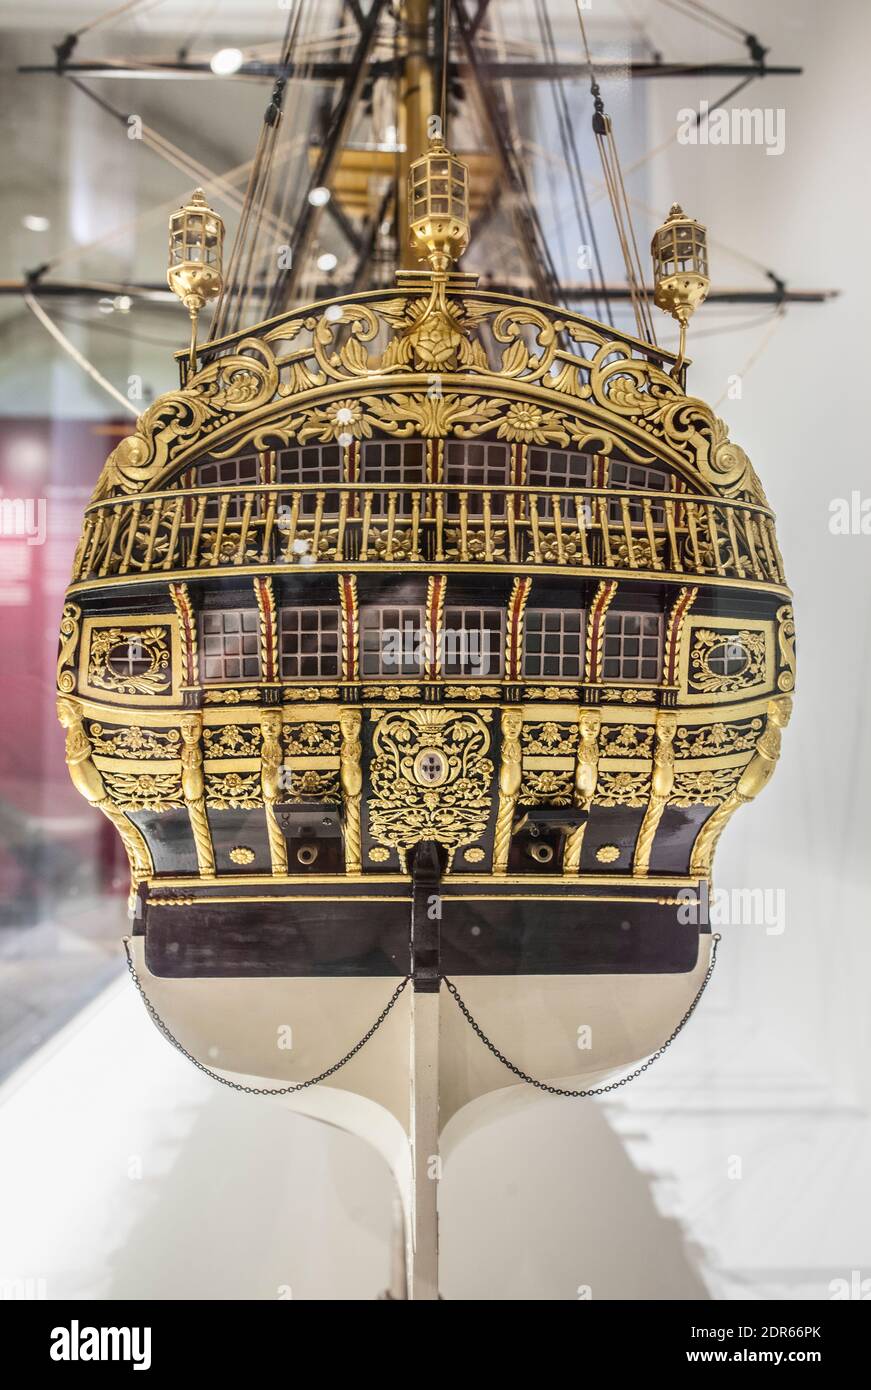 Lisbonne, Portugal - le 1er mars 2020 : la poupe du navire de guerre principe da Beira, 1774. Modèle à échelle. Musée de la Marine, Lisbonne, Portugal Banque D'Images